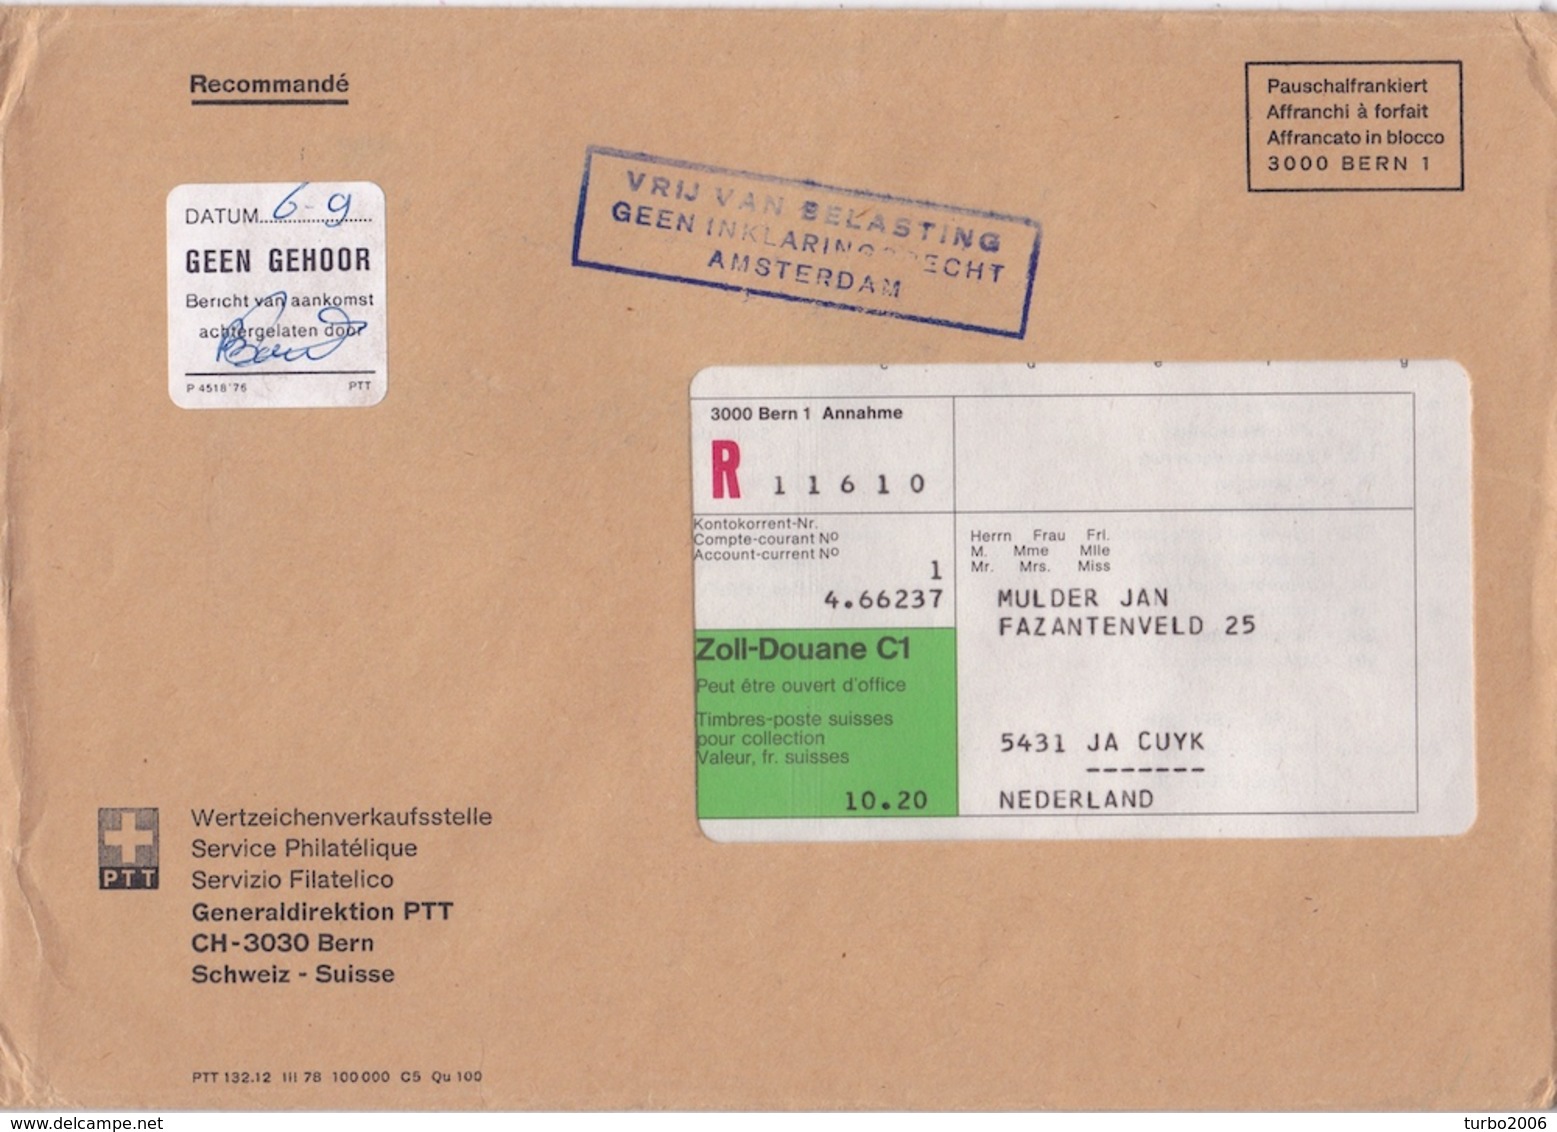 1979 Aangetekende Envelop 16 X 23 Cm Uit Zwitserland Met O.a. VRIJ VAN BELASTING, GEEN INKLARINGSRECHT AMSTERDAM - Poststempels/ Marcofilie